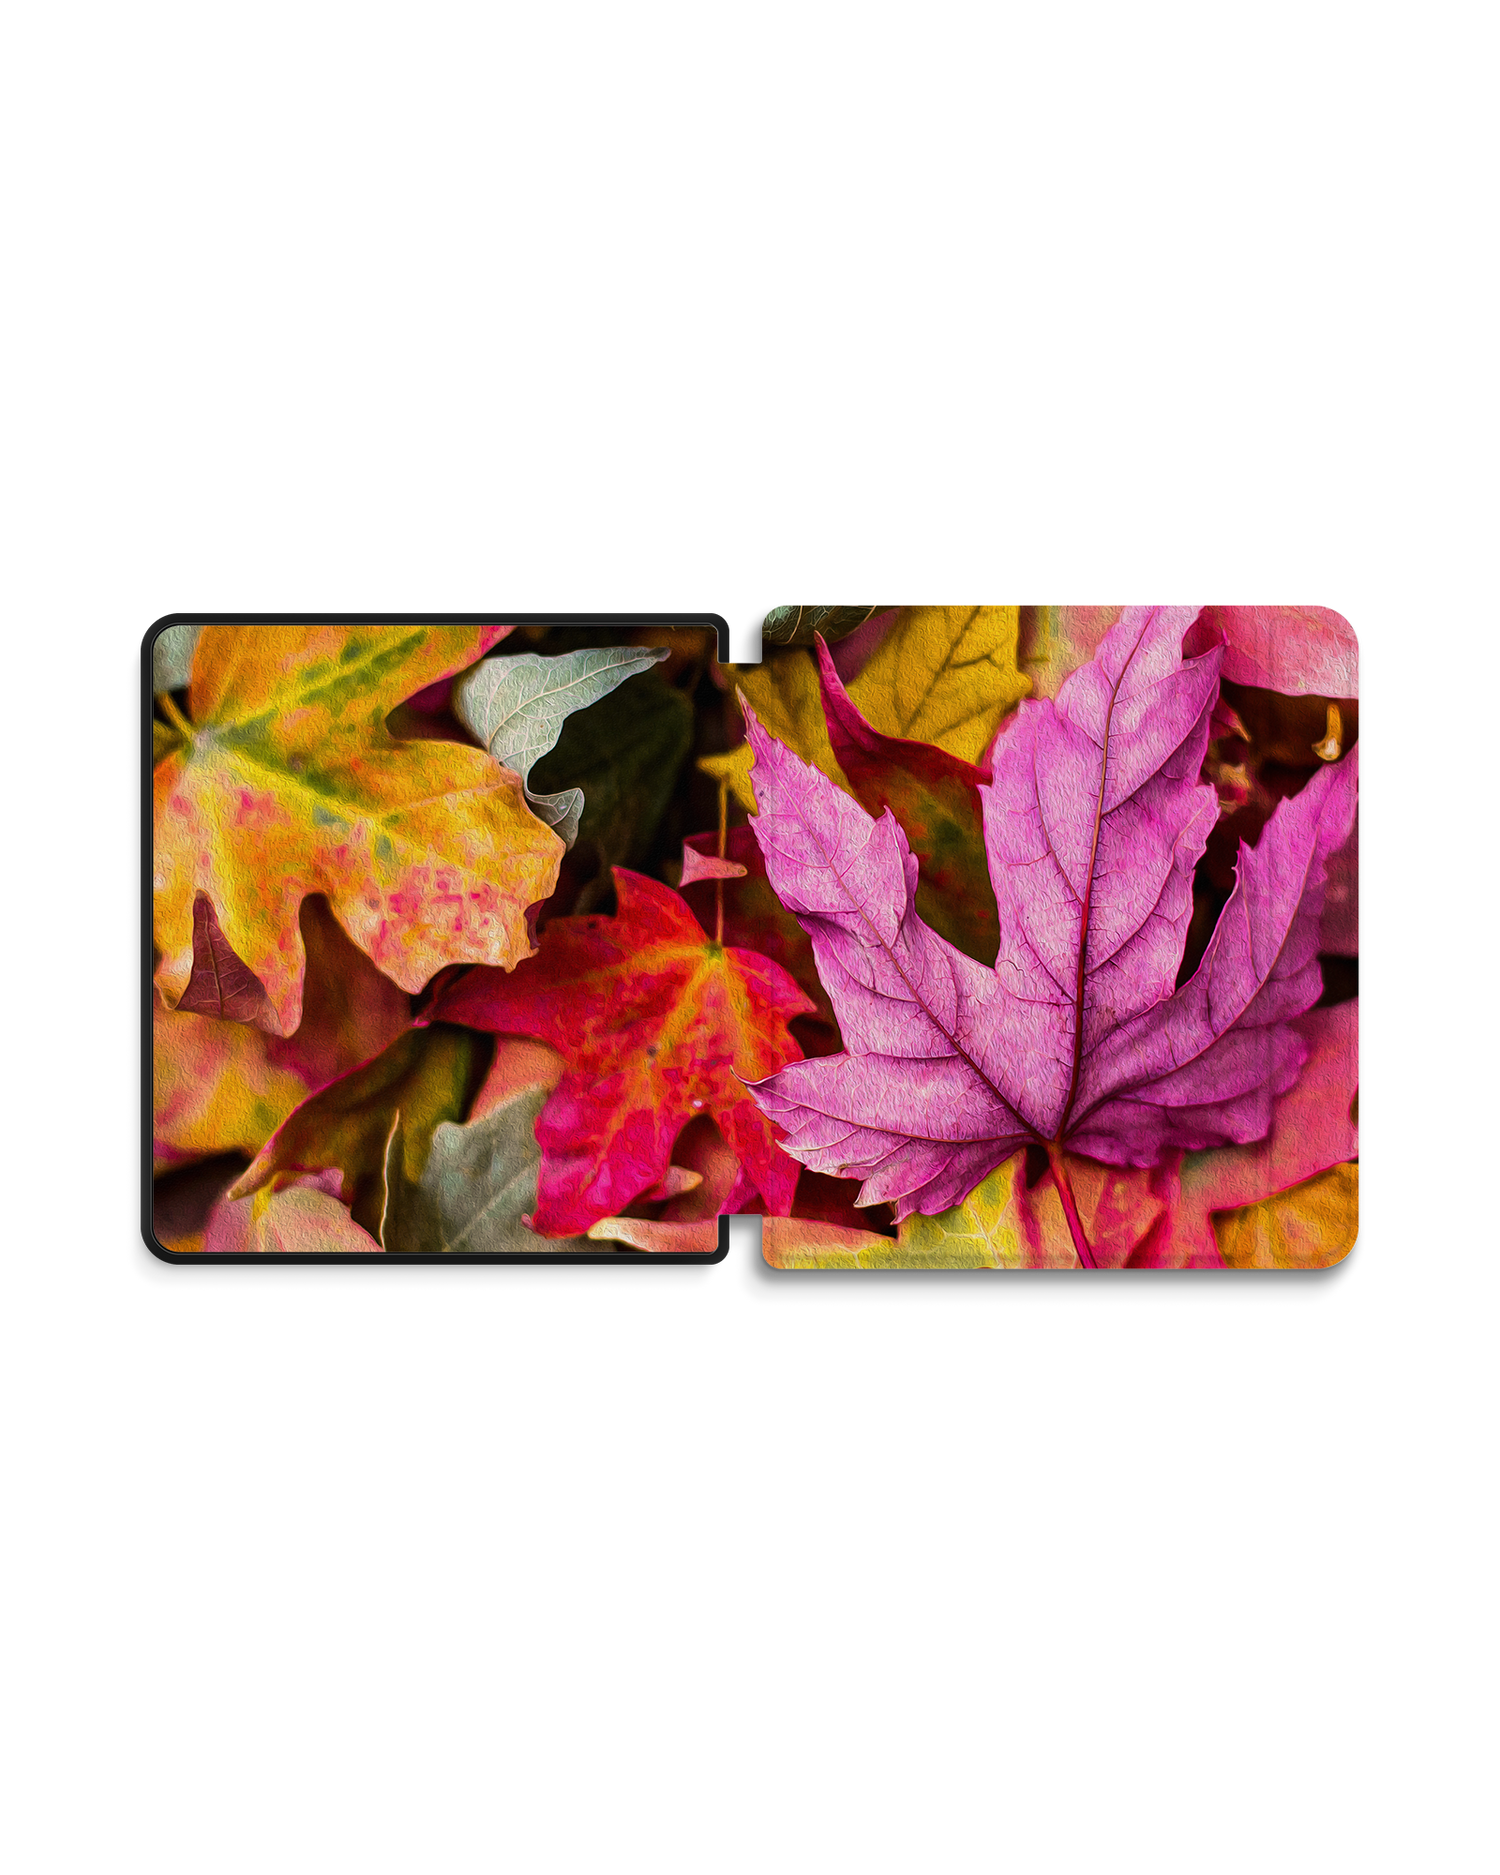 Autumn Leaves eBook Reader Smart Case für tolino epos 2: Geöffnet Außenansicht